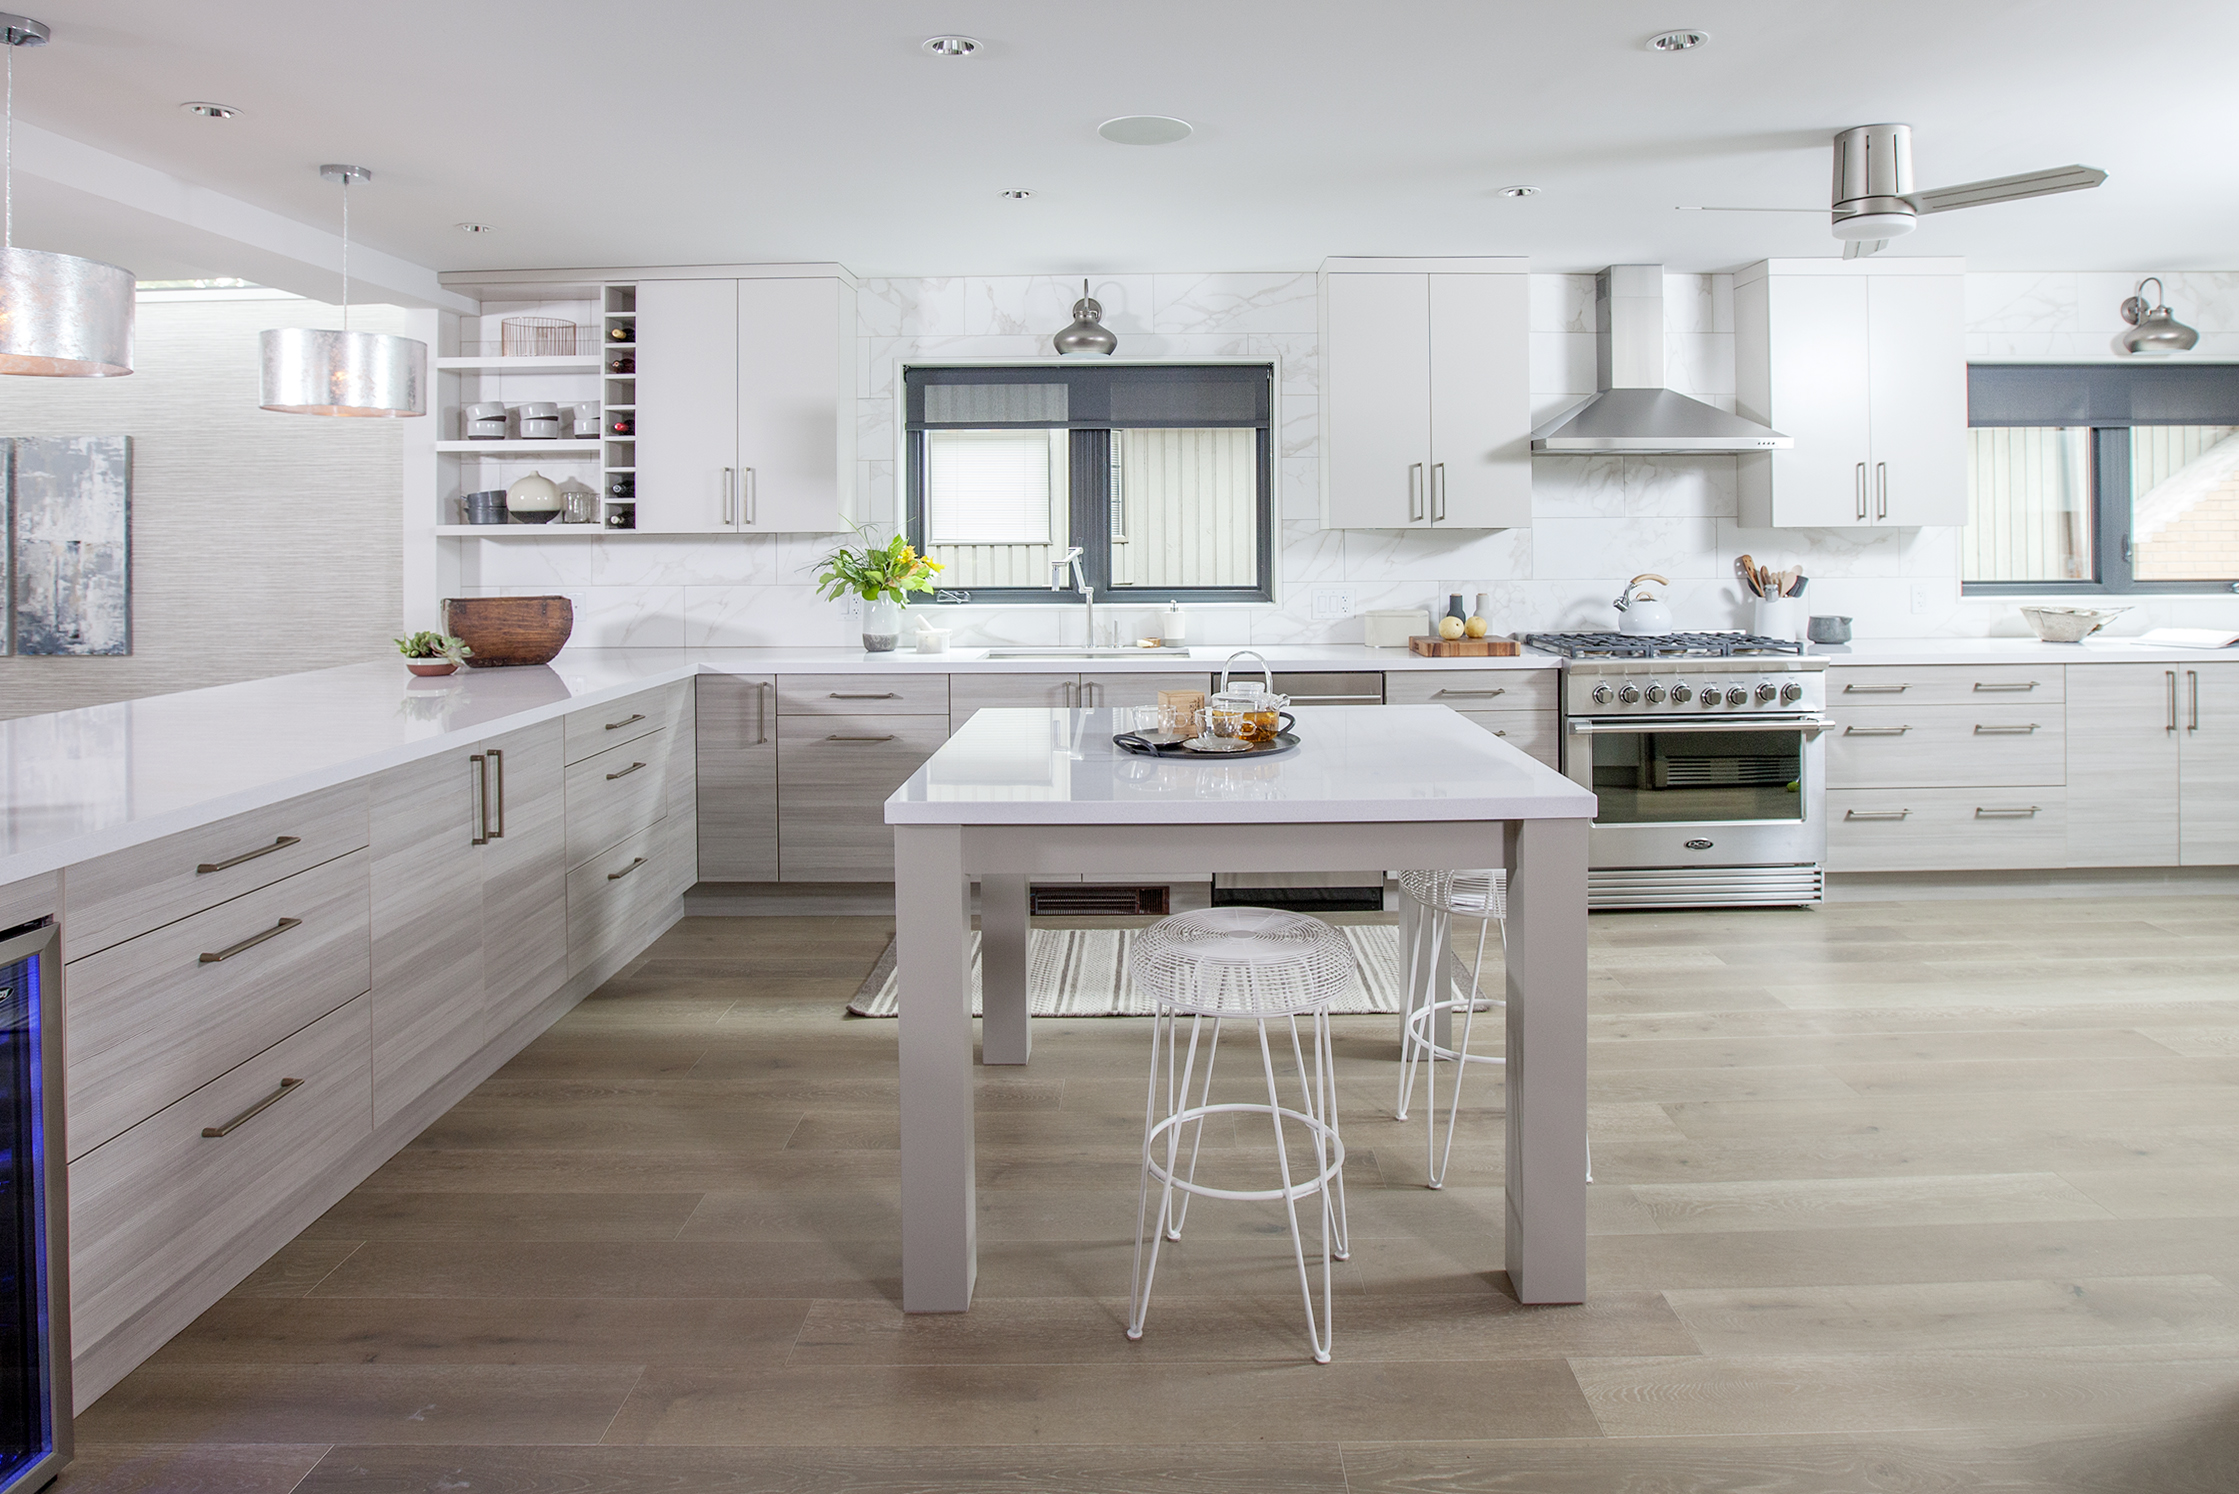 Modern white kitchen with sleek steel accents